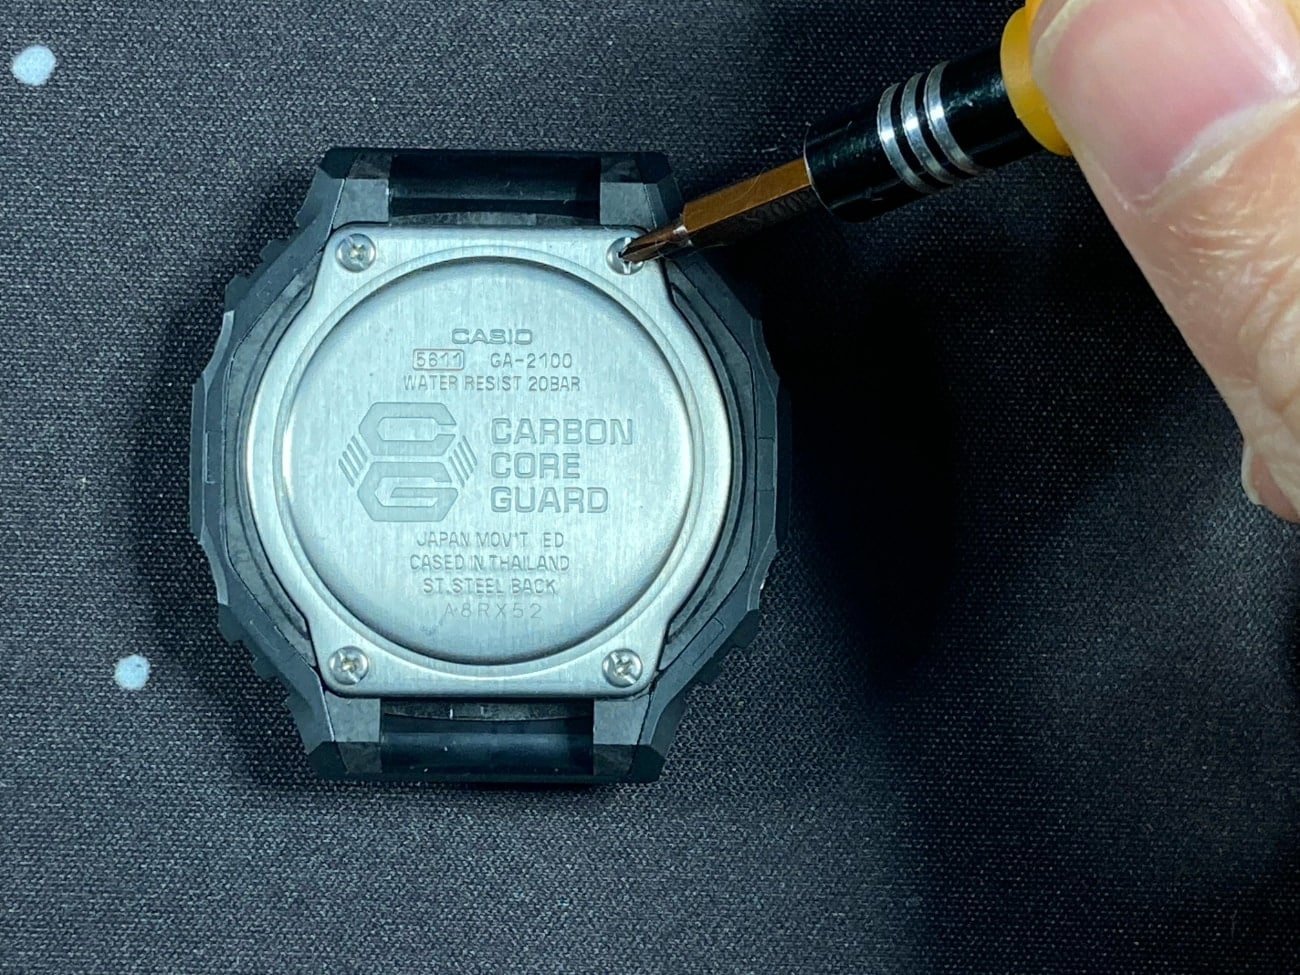 Cambio de pila en el Casio G-Shock GA-2100: quitamos los cuatro tornillos de la tapa trasera